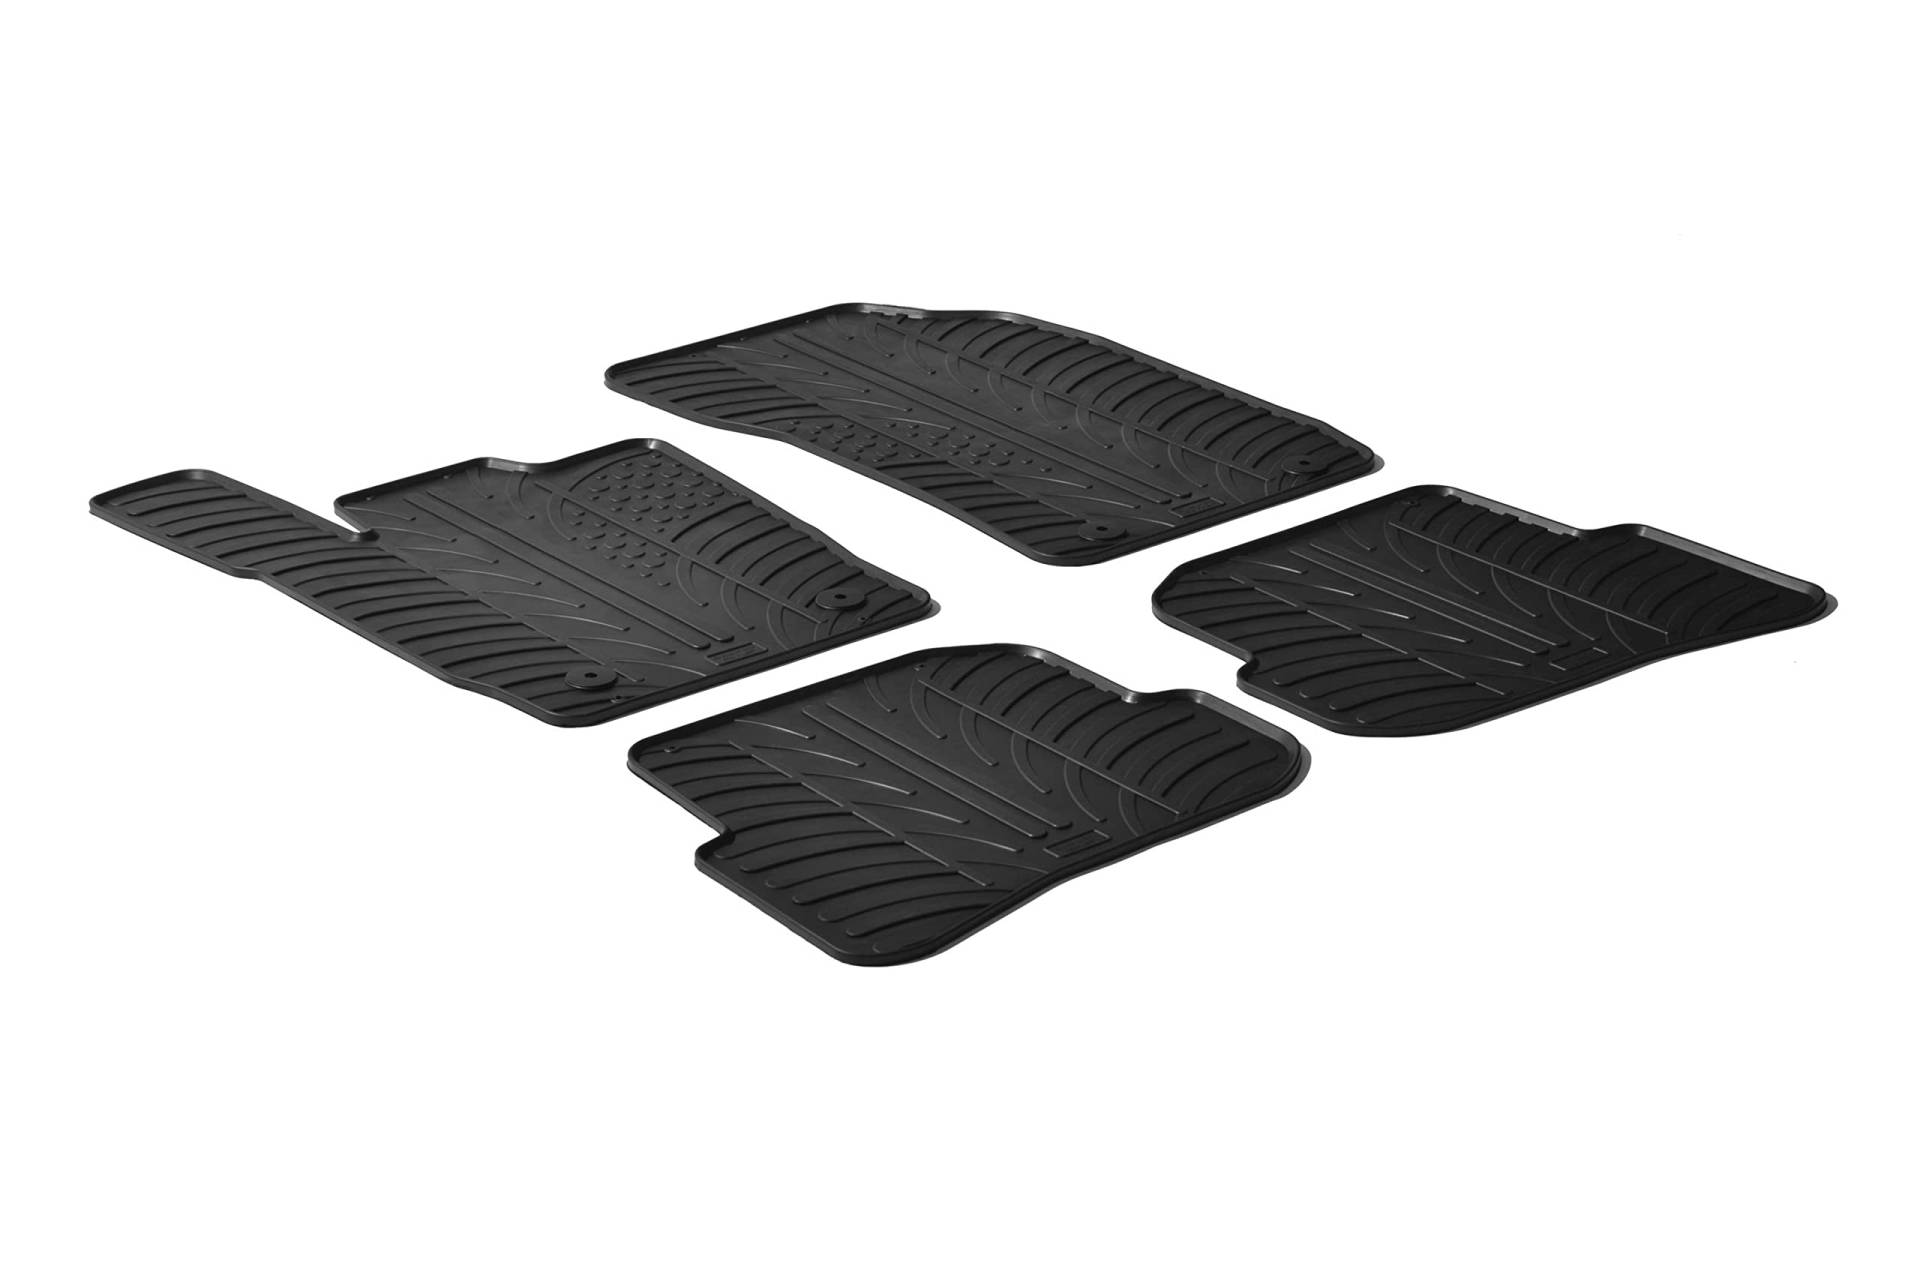 AROBA GL0244 Design Gummi Fußmatten kompatibel mit Audi A1 & S1 BJ. 07.2010-11.2018 erhöhter Rand 4 tlg Farbe Schwarz Gummimatten Automatten passgenau von Aroba